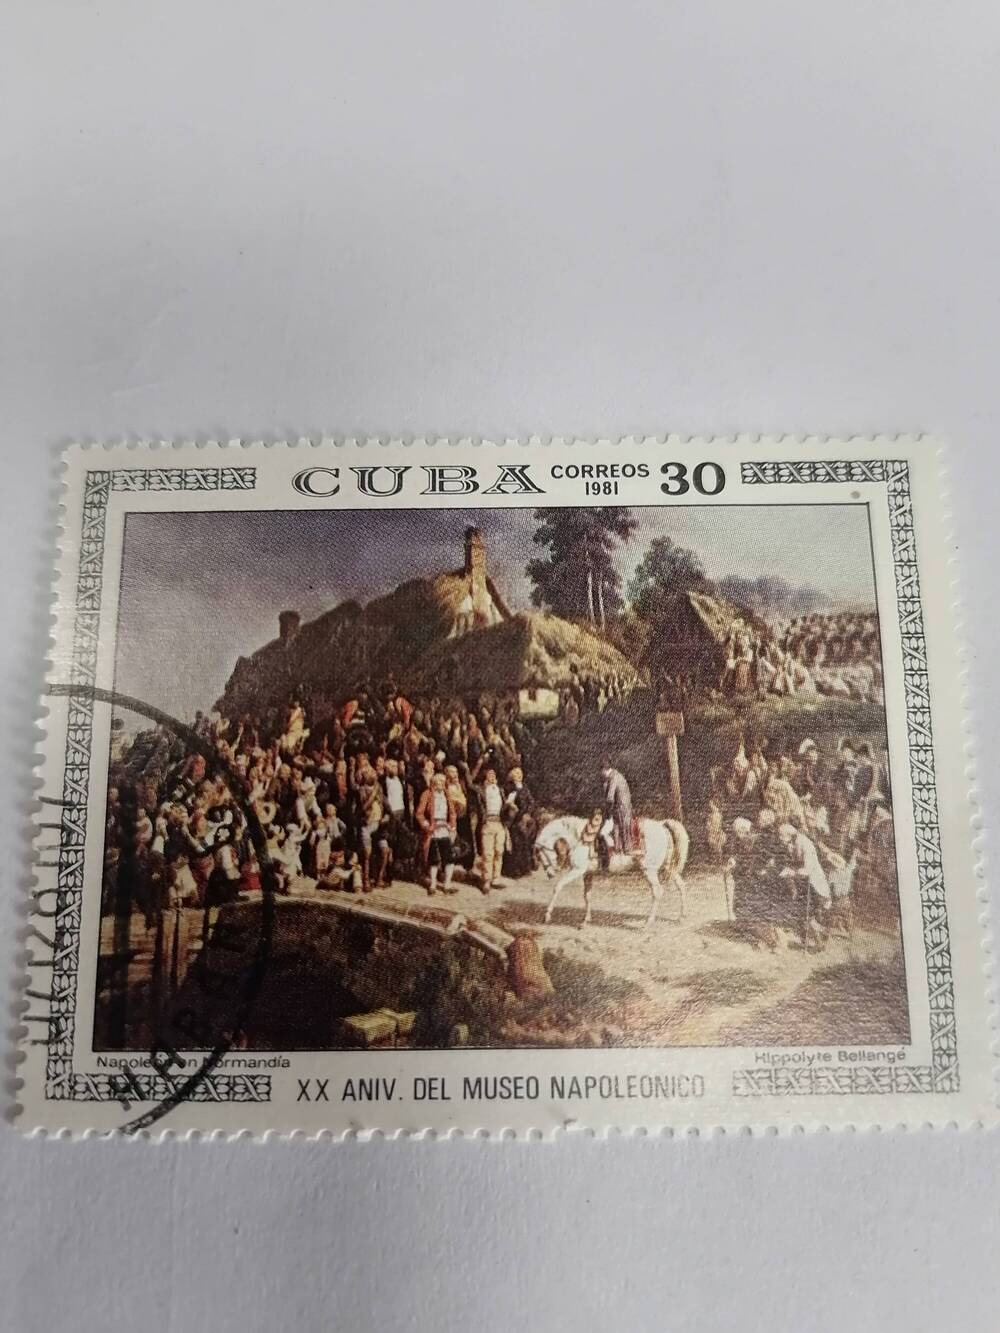 Марка почтовая гашеная, Куба, 1981 г, Cuba, Correos, Napoleonen Normandia